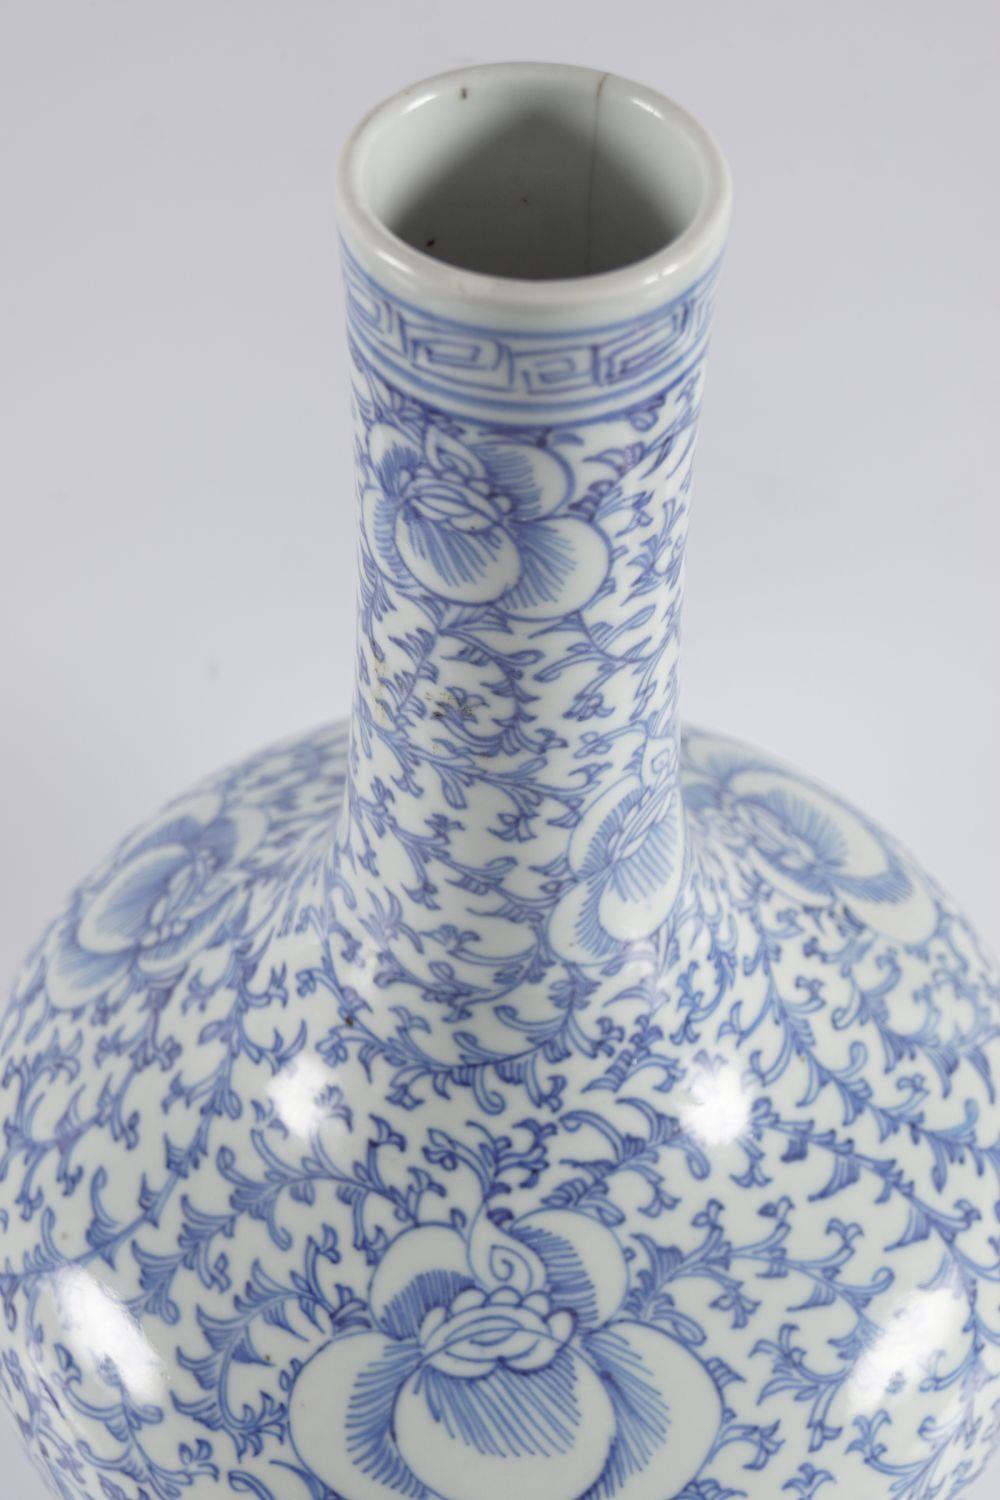 19TH-CENTURY CHINESE BLUE & WHITE VASE - Image 2 of 4